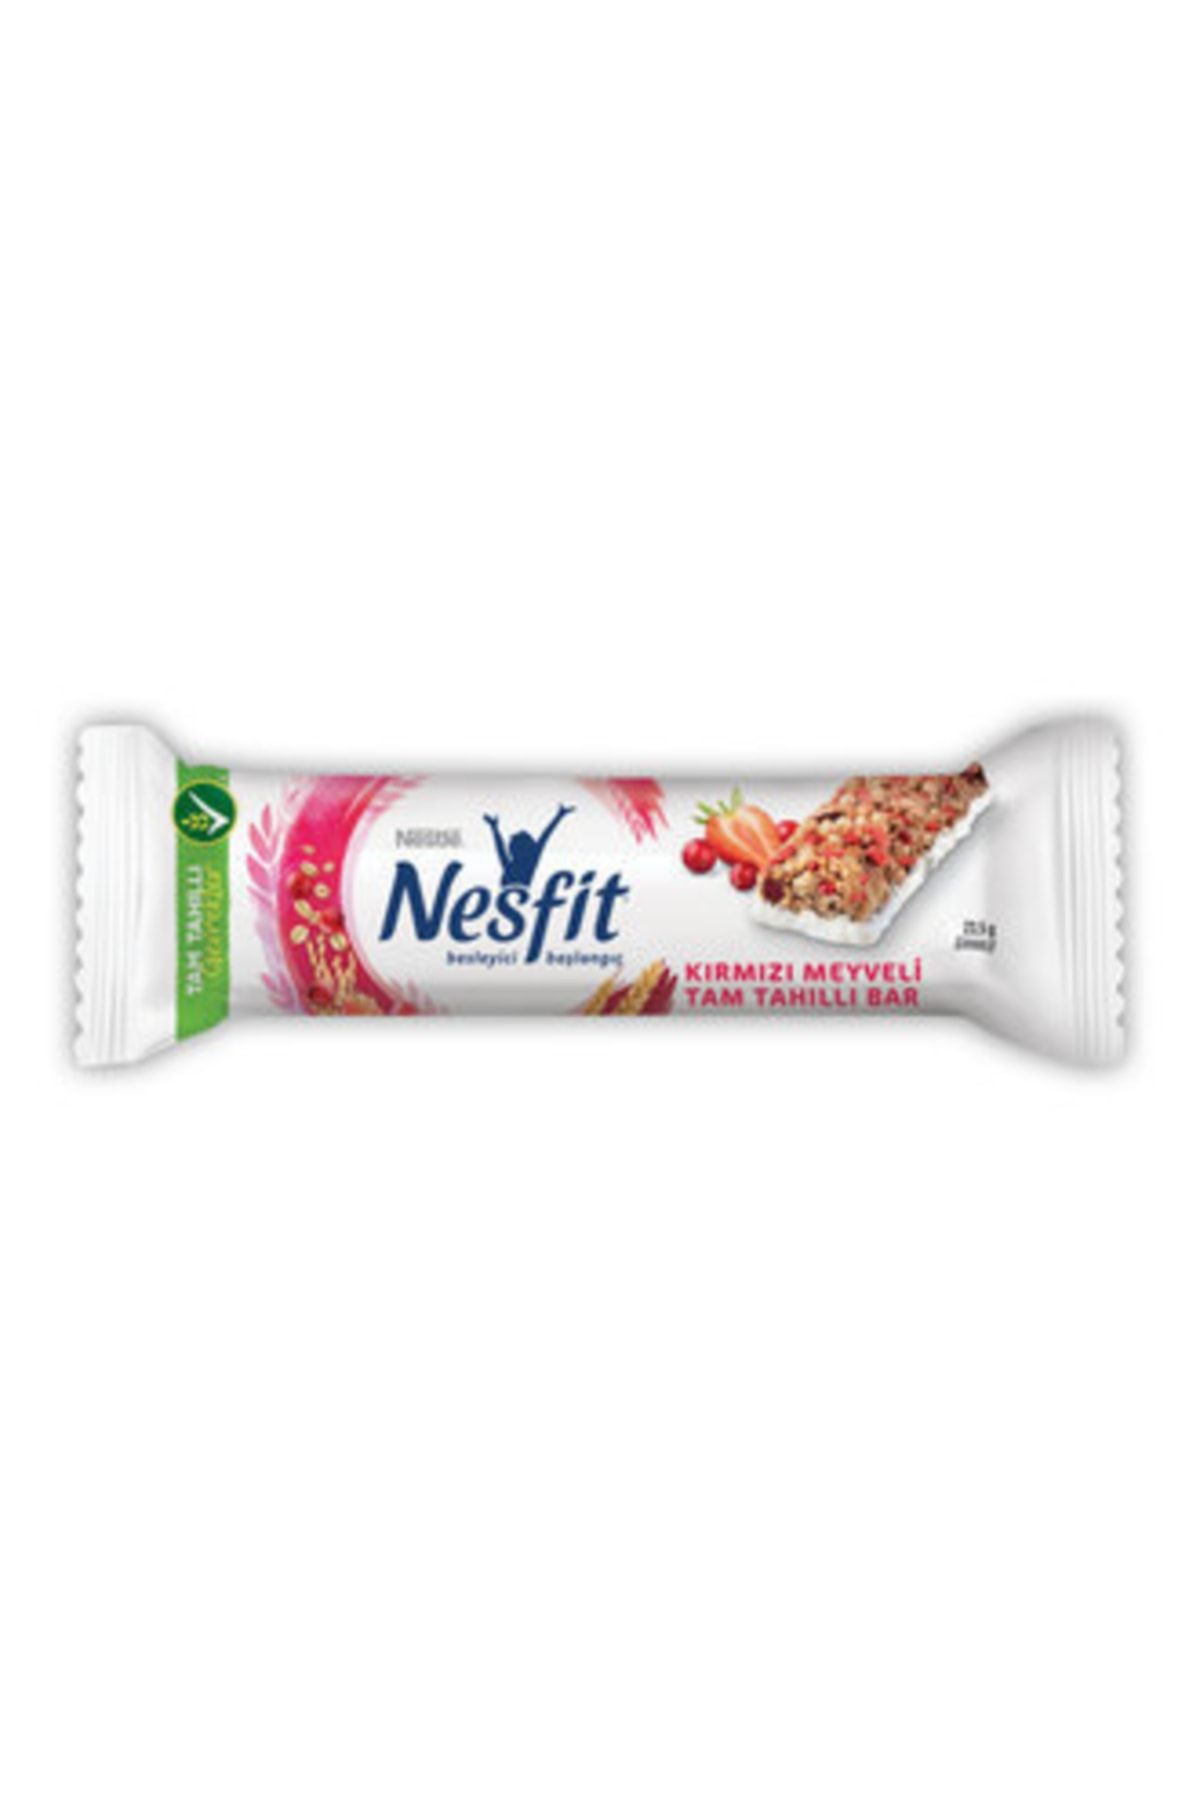 Nestle Nesfit Kırmızı Meyveli Tam Tahıll Bar 23.5 G